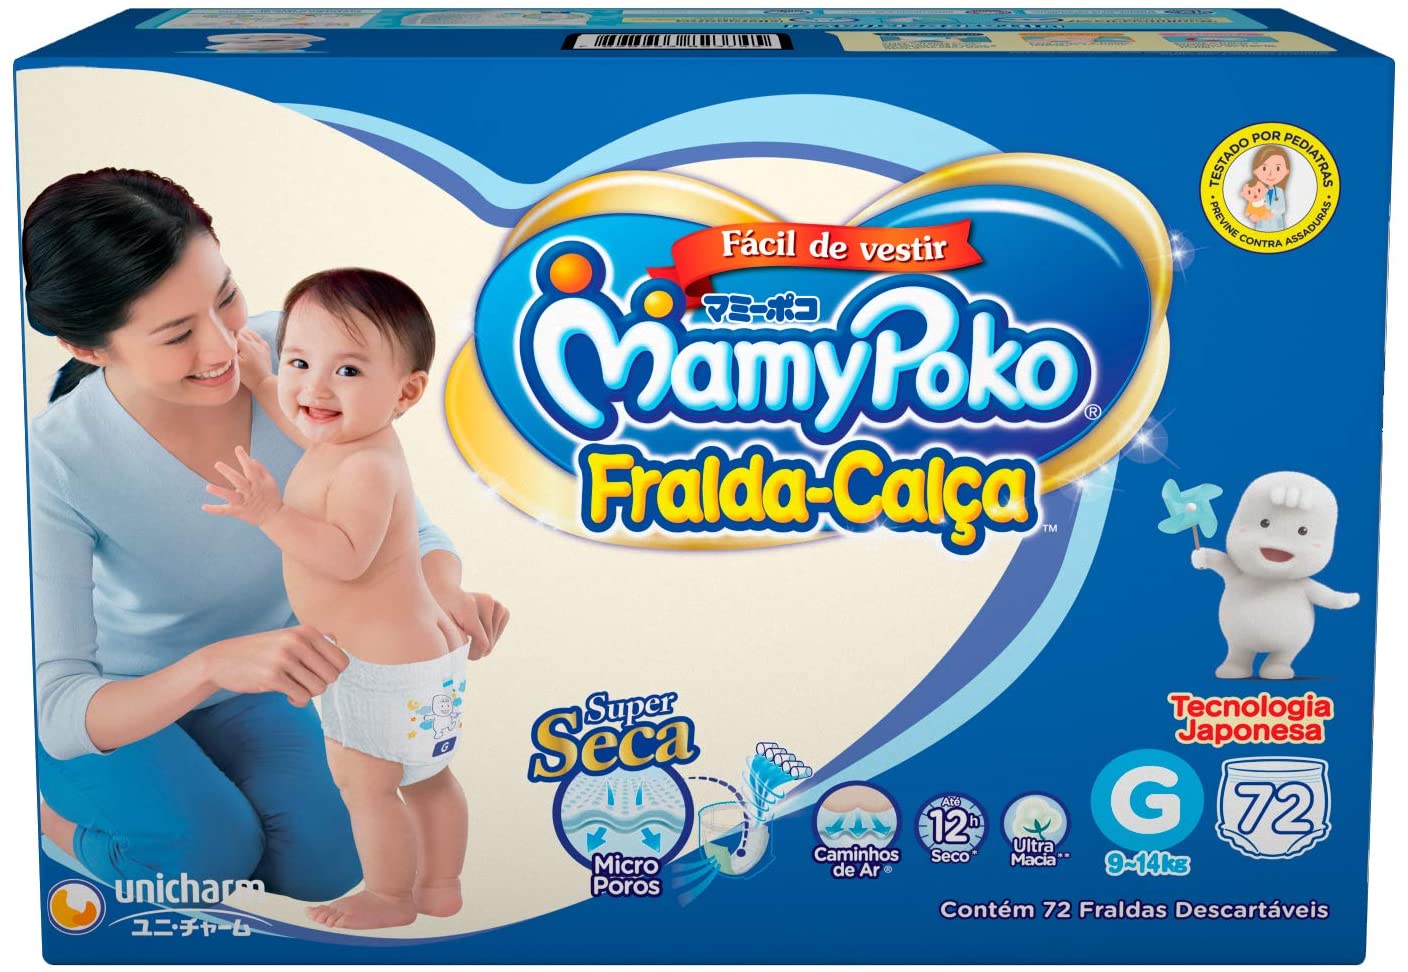 Fralda-Calça Mamypoko é boa?